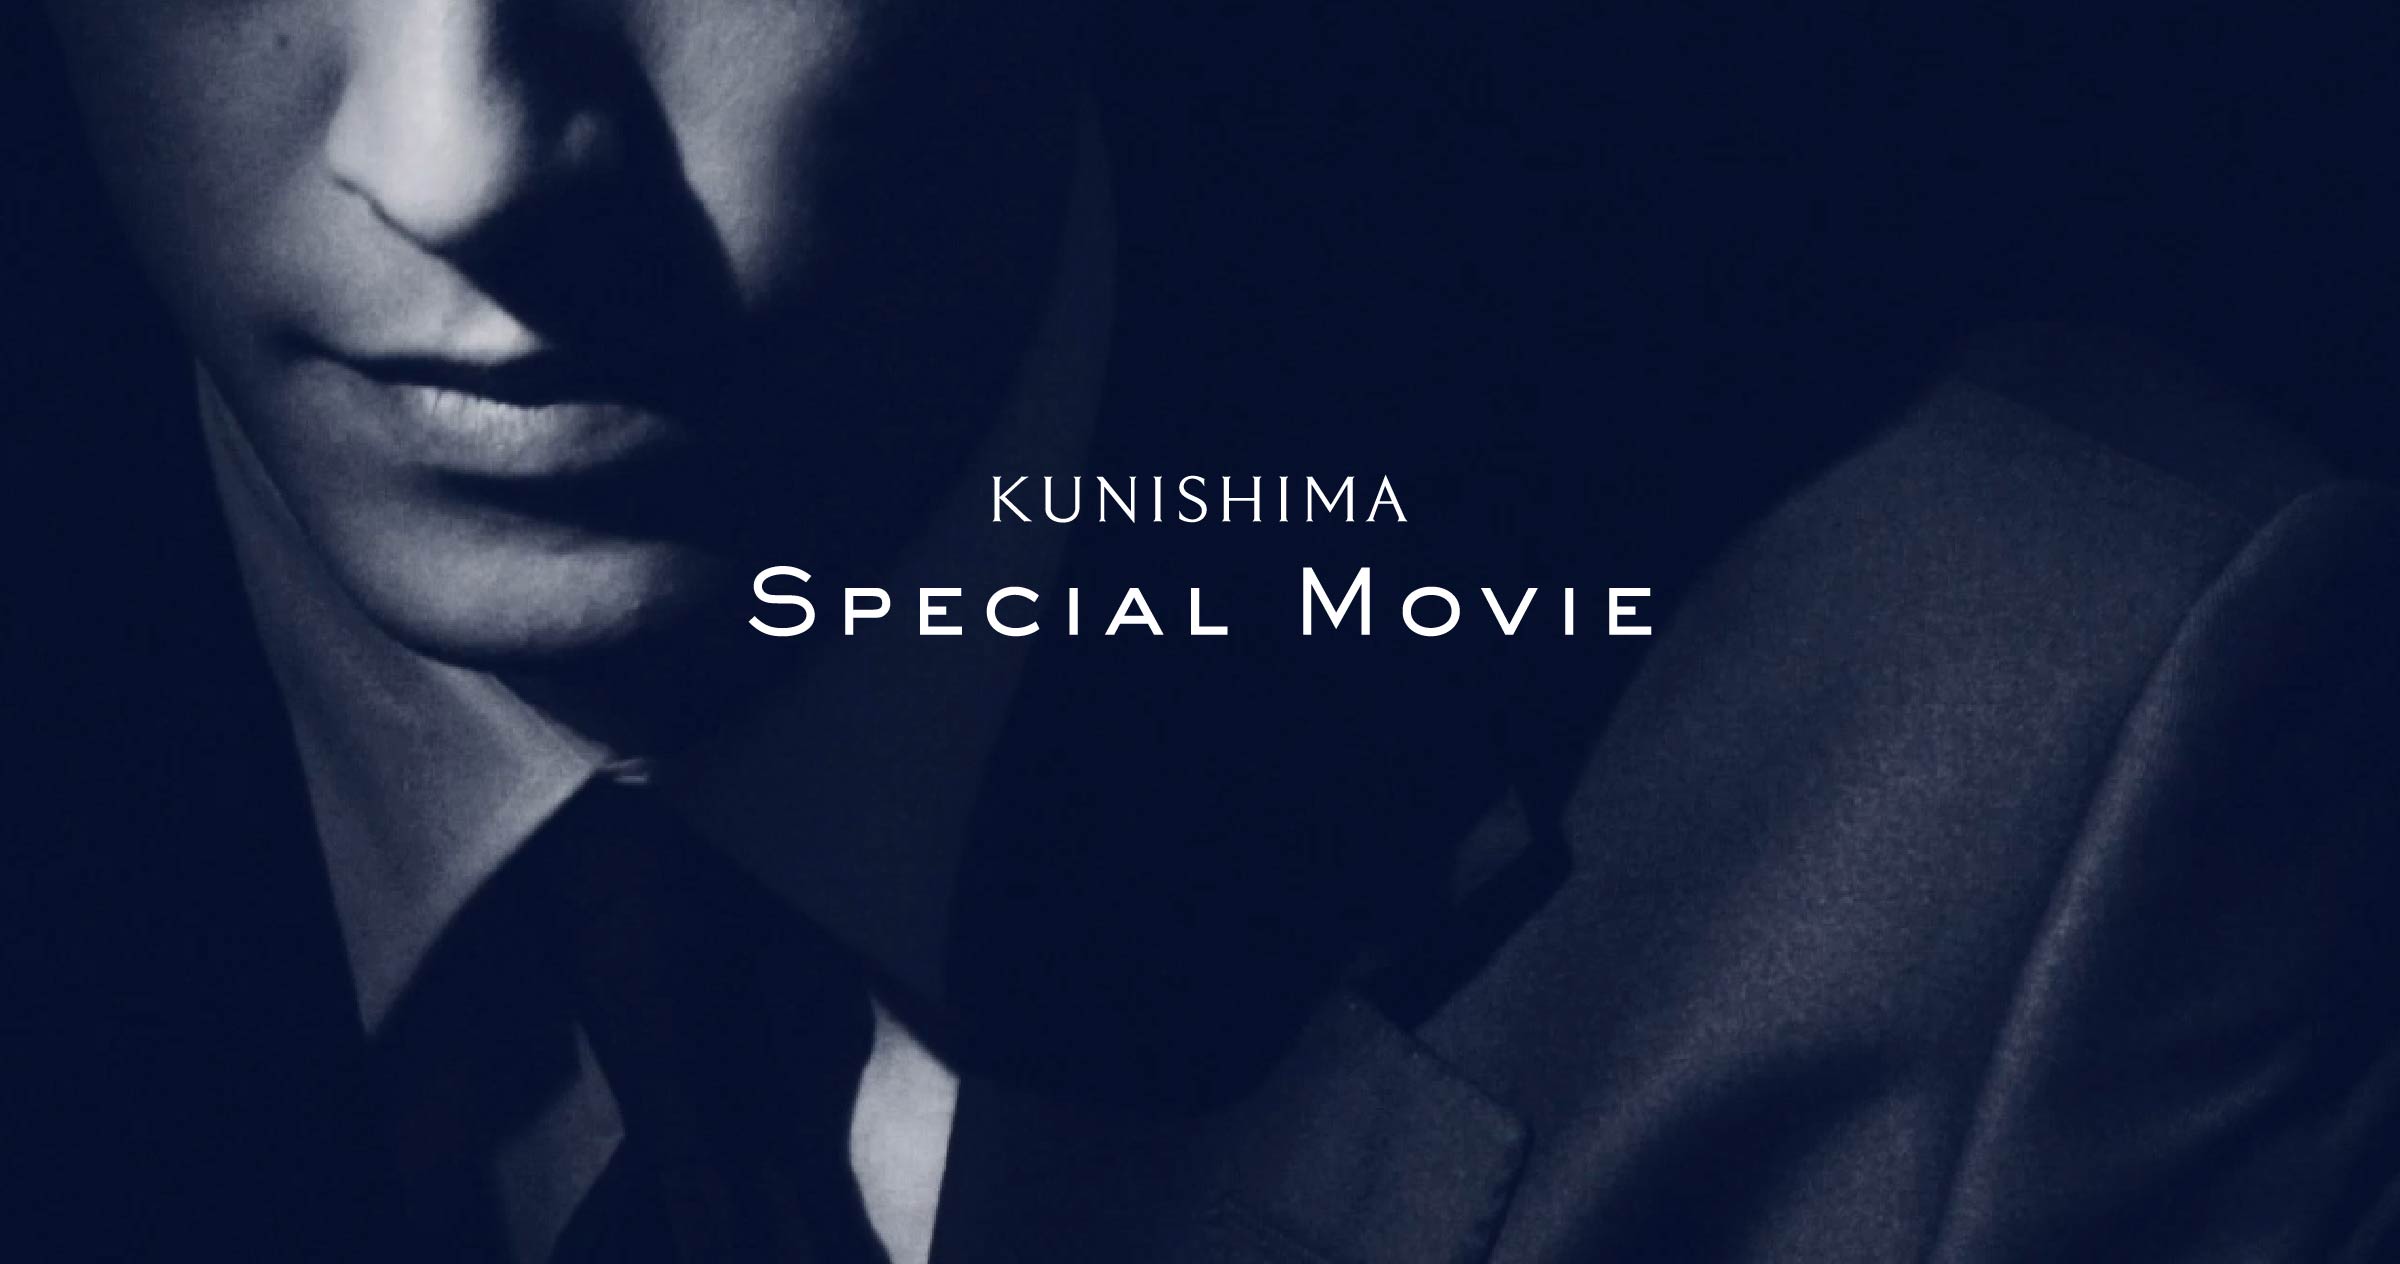 KUNISHIMA SPECIAL MOVIE